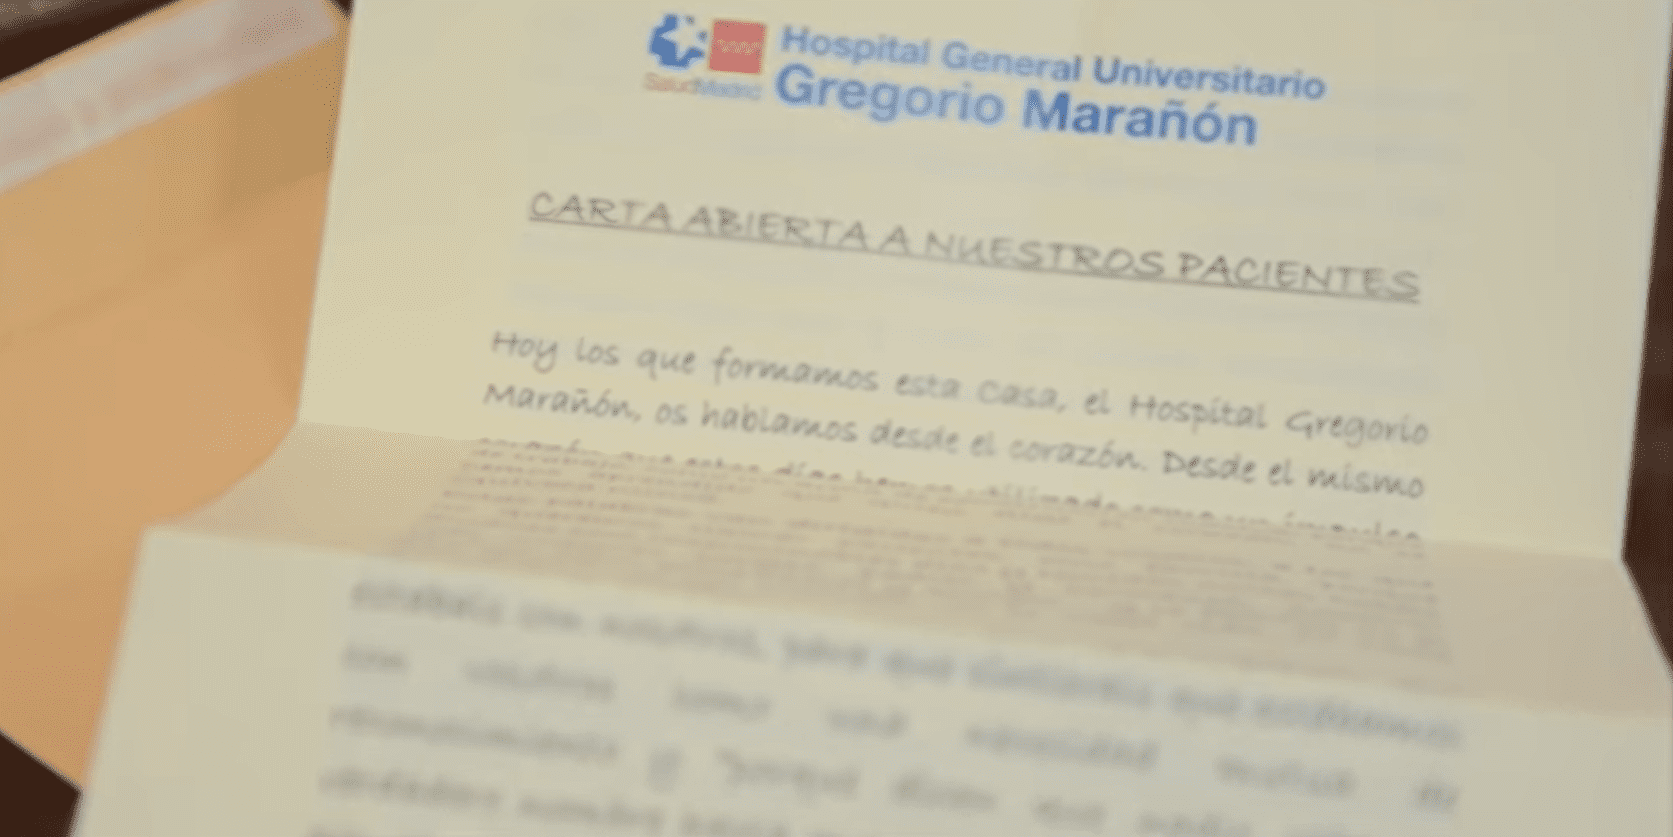 La carta leída por los profesionales del Gregorio Marañón. | Foto: YouTube/SaludMadrid